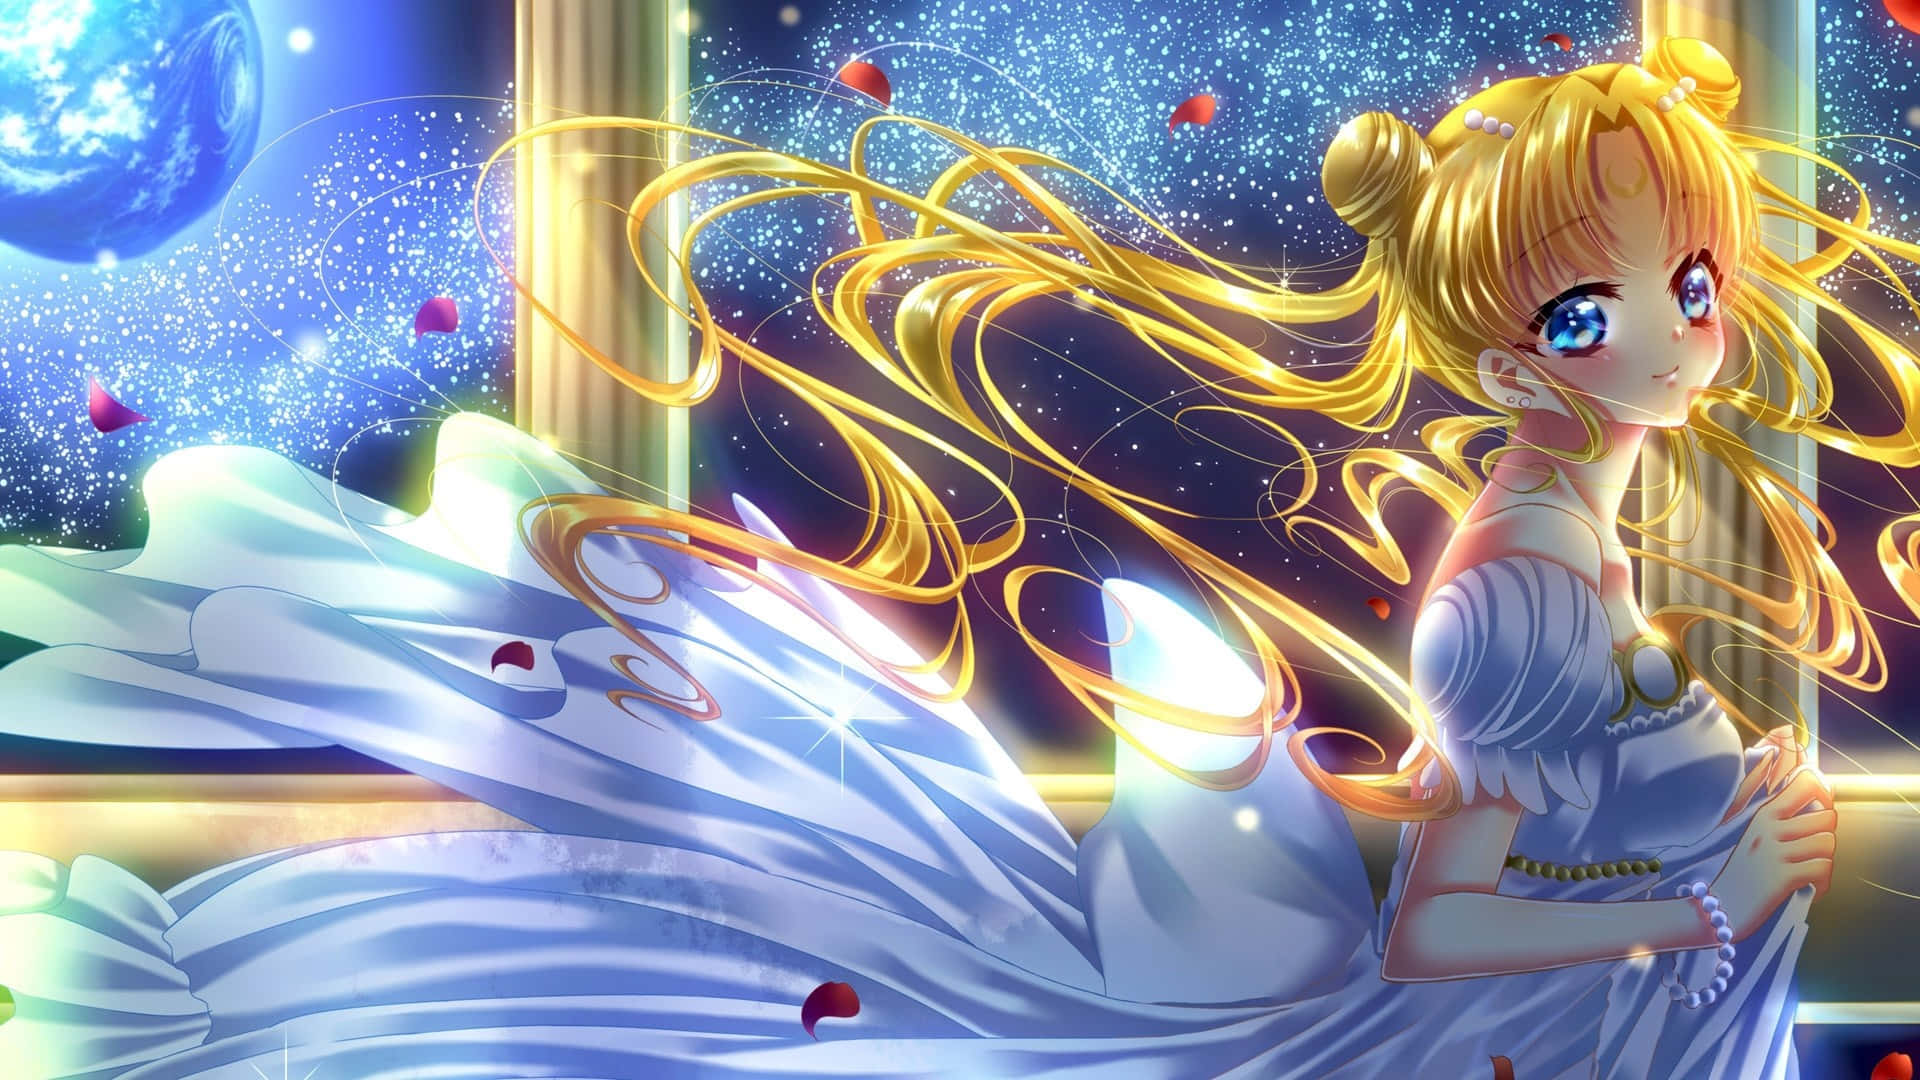 Sailorguardians Kæmper For At Beskytte Verden I Sailor Moon.